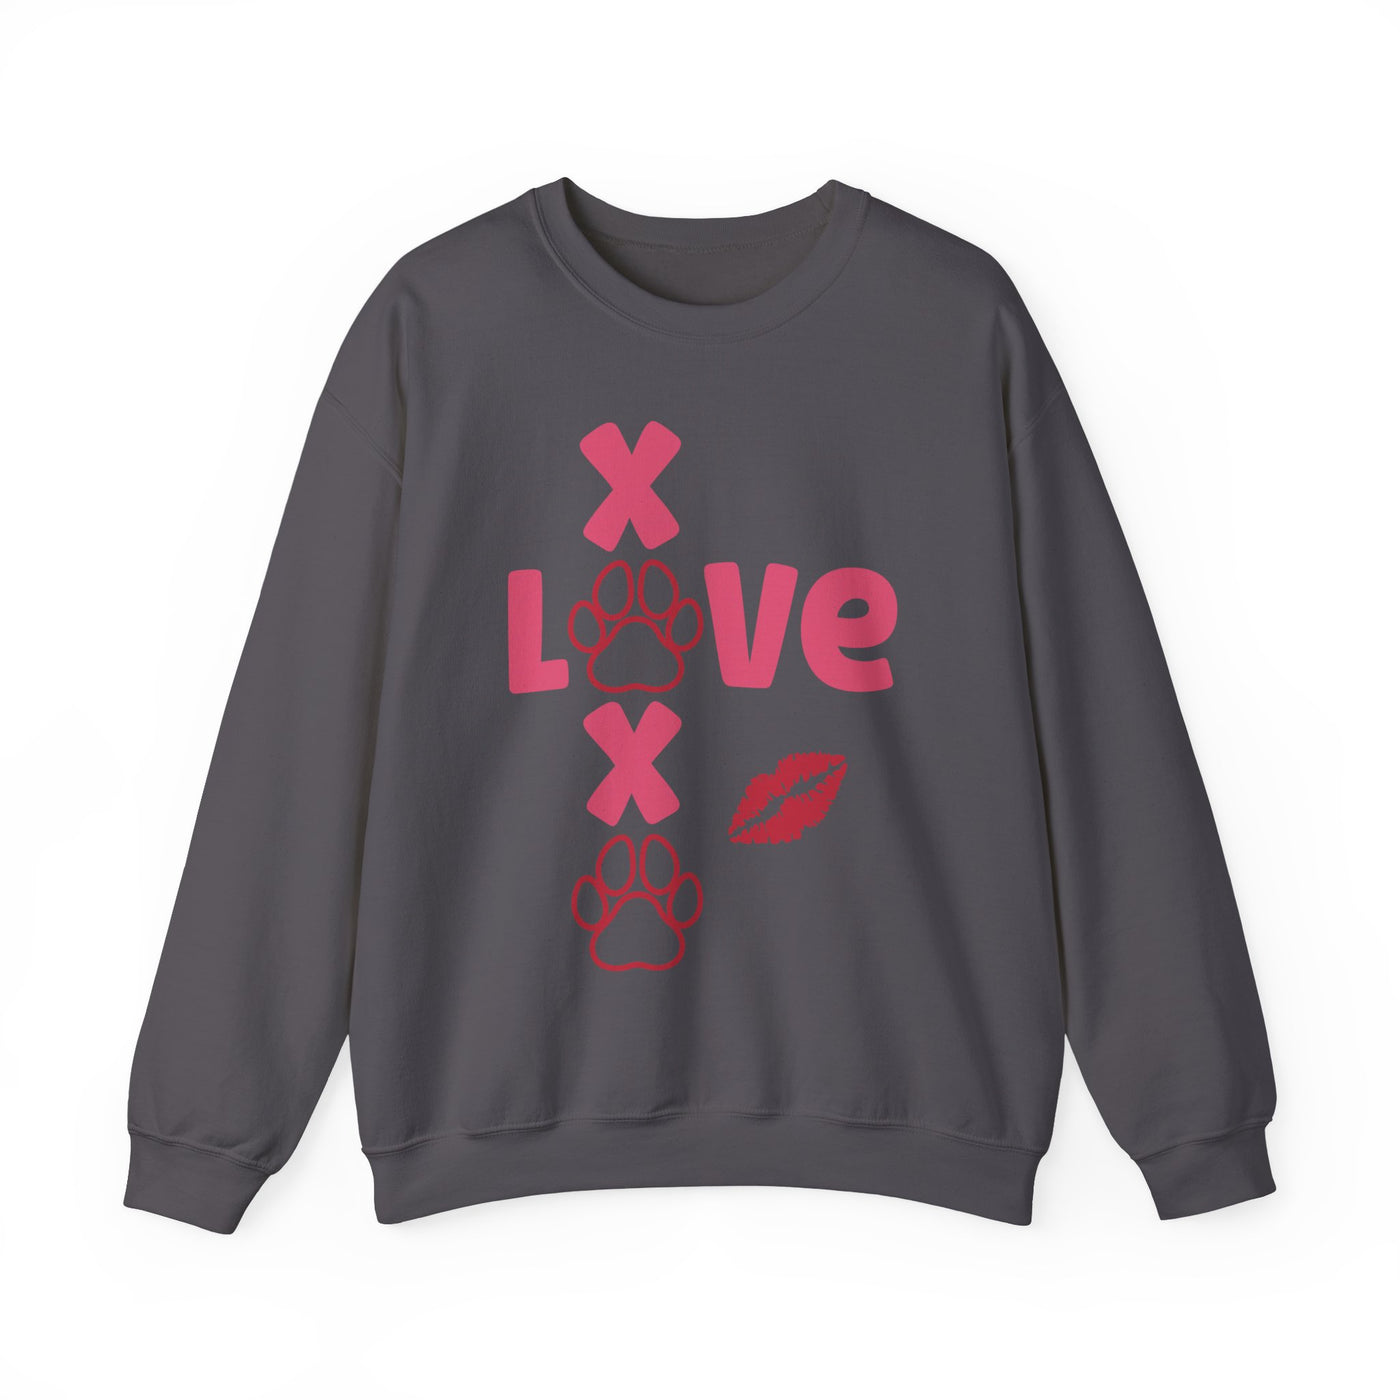 Love XOXO Sweatshirt